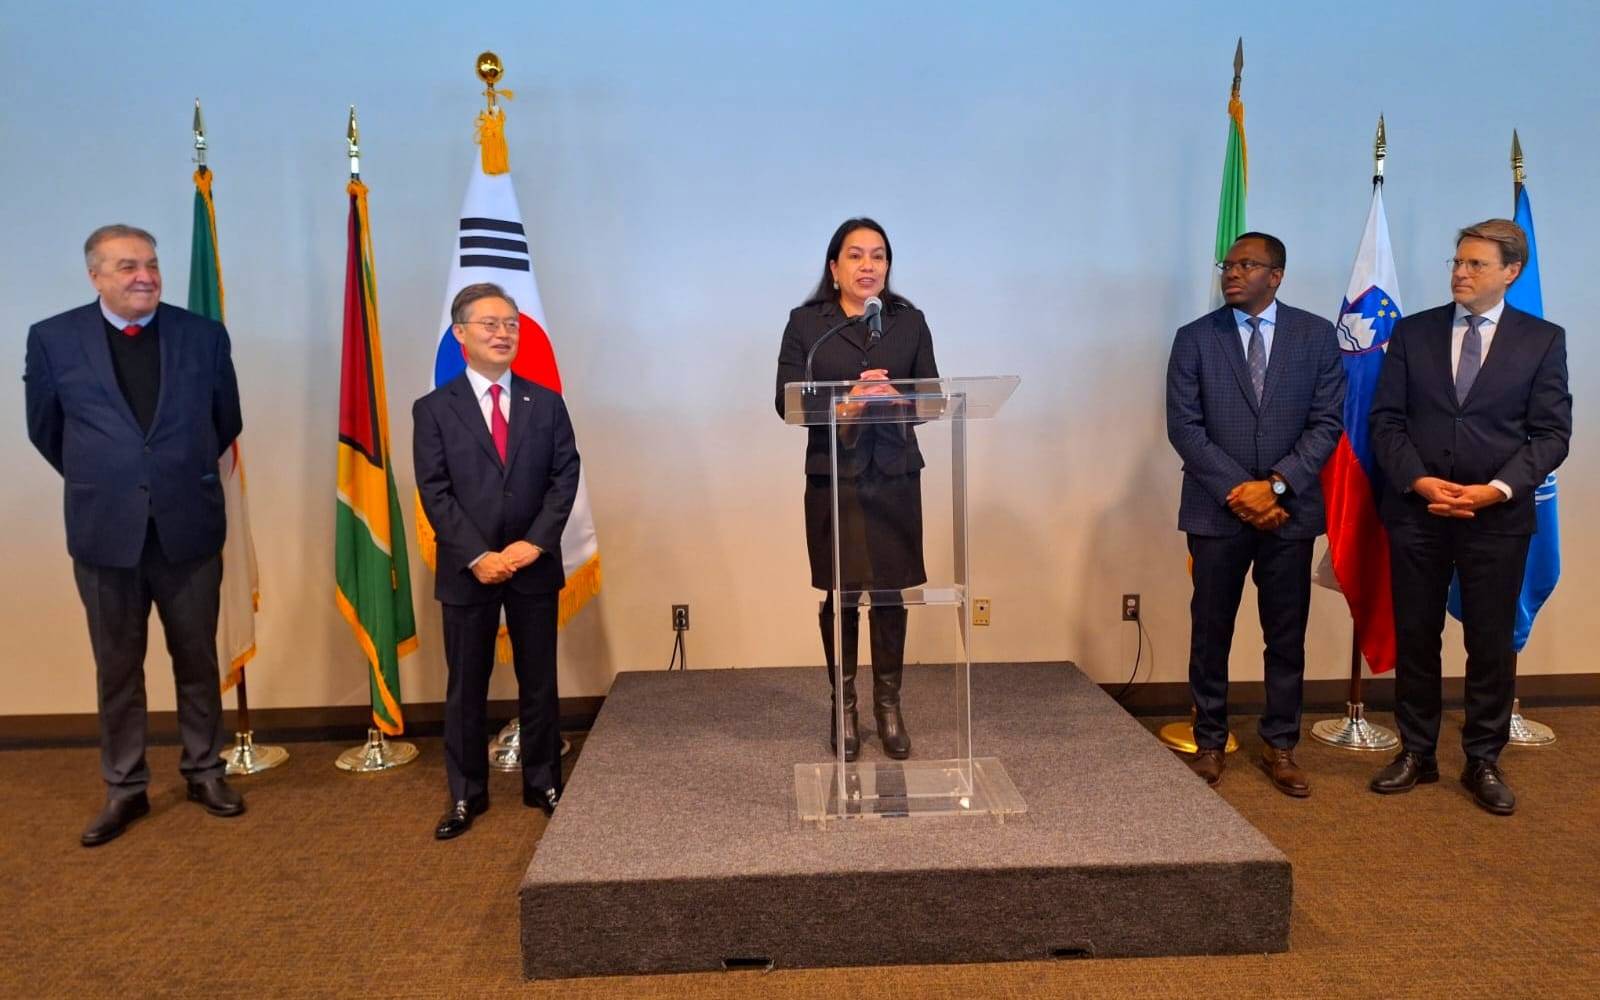 Her Excellency Ambassador Rodrigues-Birkett delivering remarks